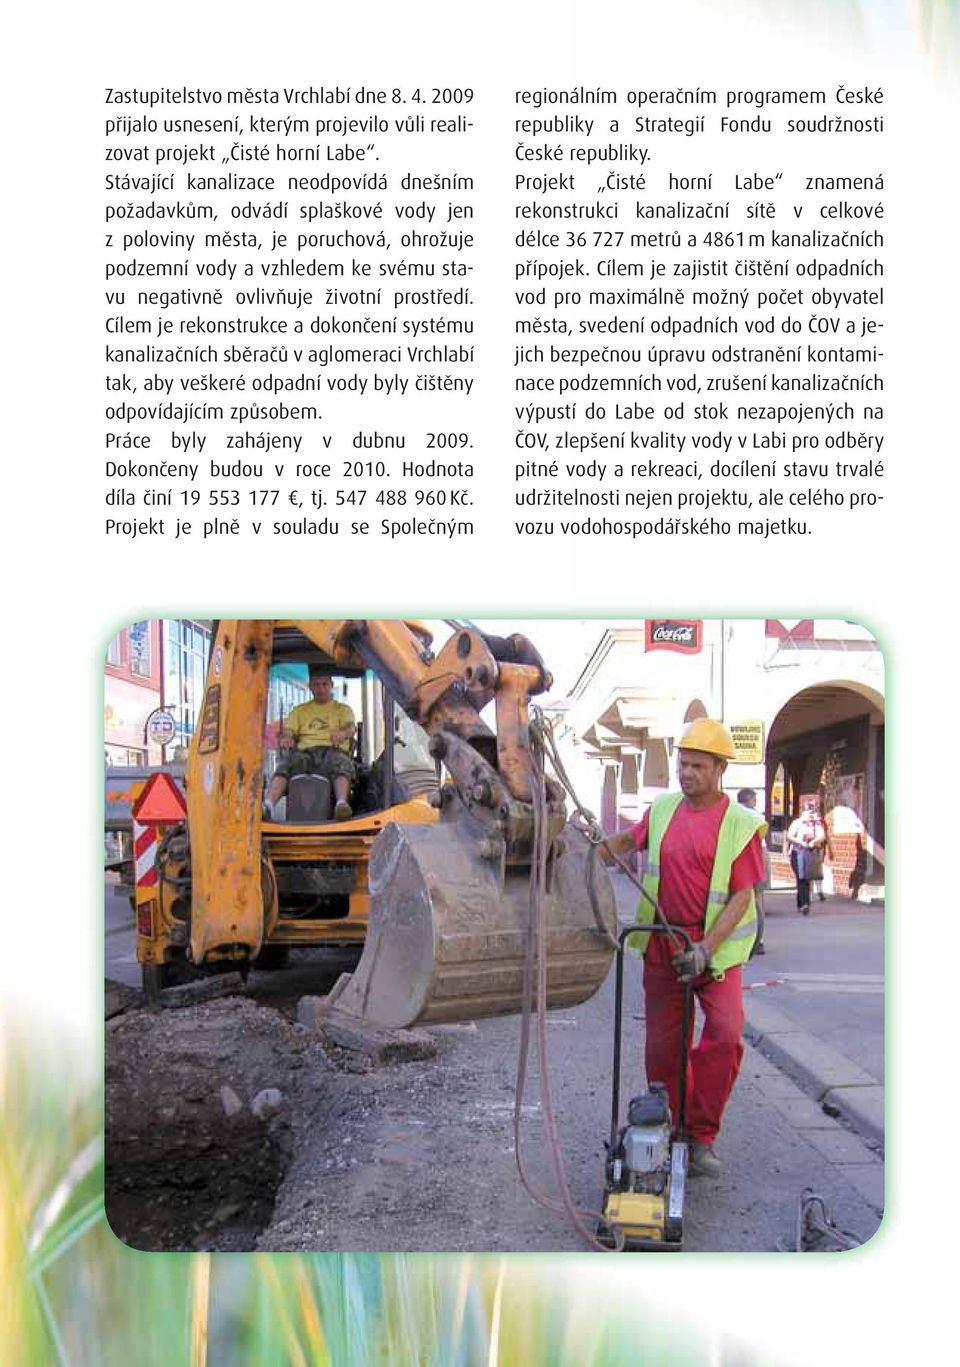 Cílem je rekonstrukce a dokončení systému kanalizačních sběračů v aglomeraci Vrchlabí tak, aby veškeré odpadní vody byly čištěny odpovídajícím způsobem. Práce byly zahájeny v dubnu 2009.